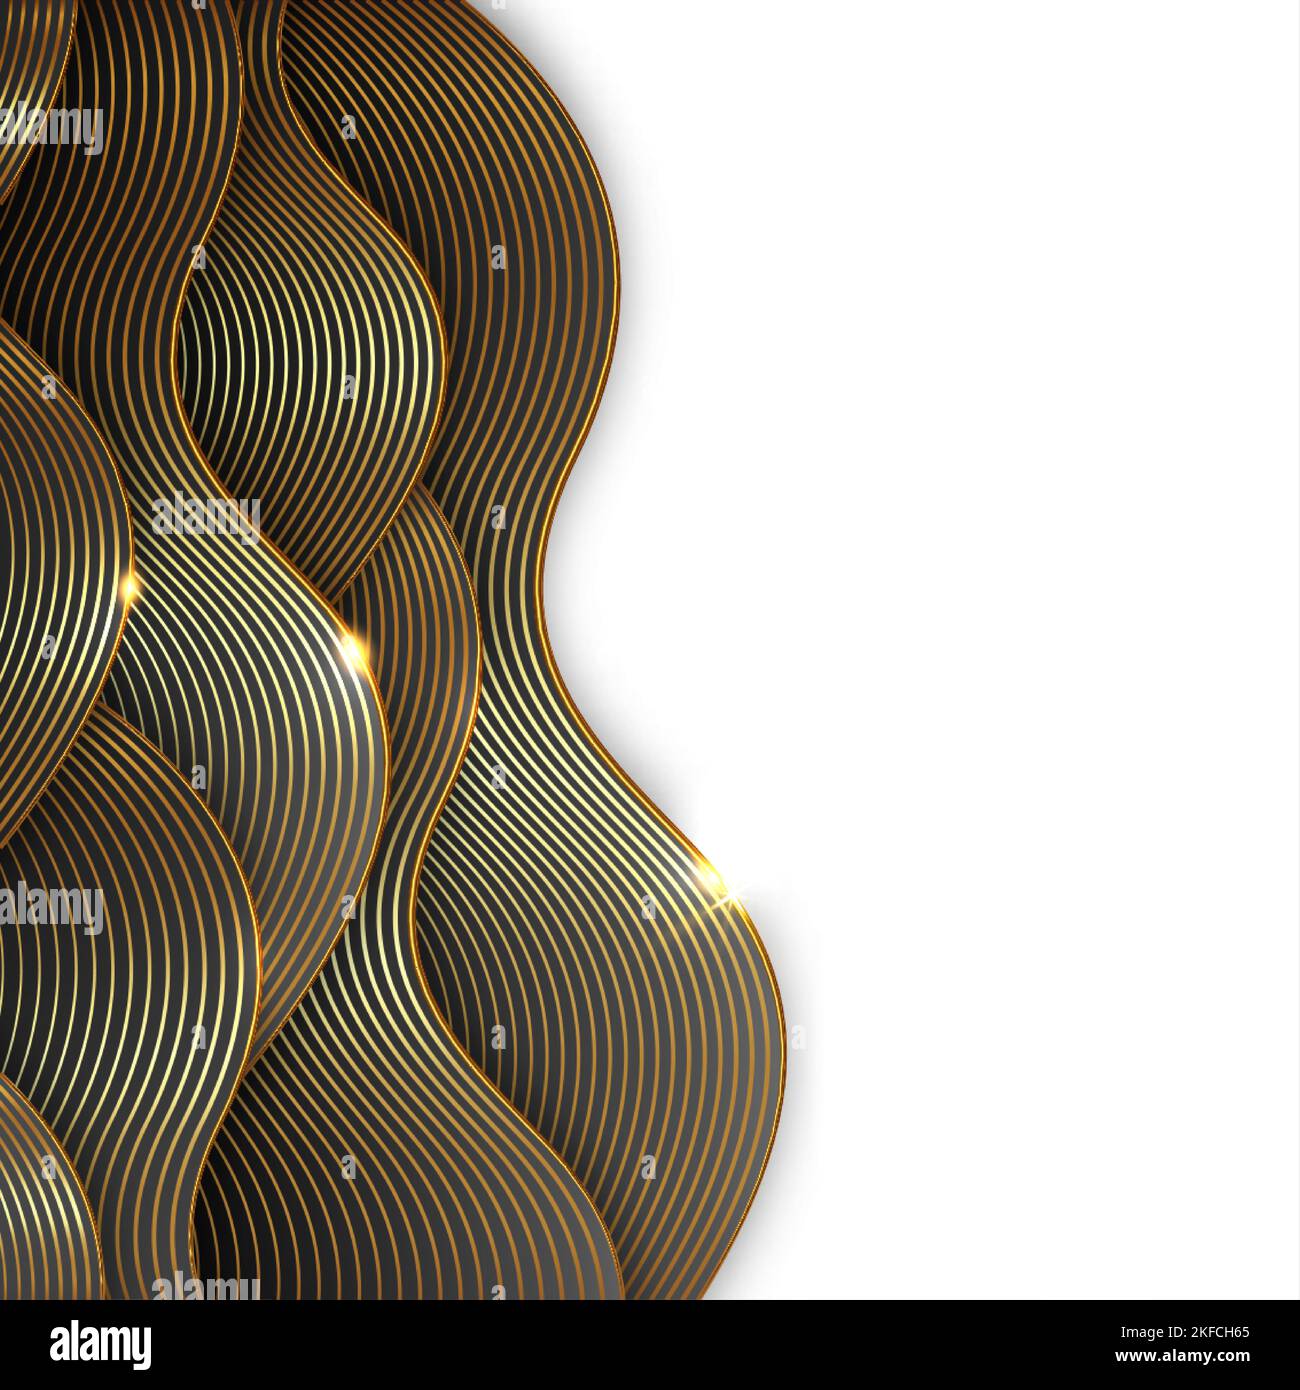 Abstrakt glänzende Farbe Gold Welle Design-Element, goldene Linien Muster Hintergrund. Golding Luxury Design für Cover, Einladung, Banner-Vorlage, isoliert Stock Vektor